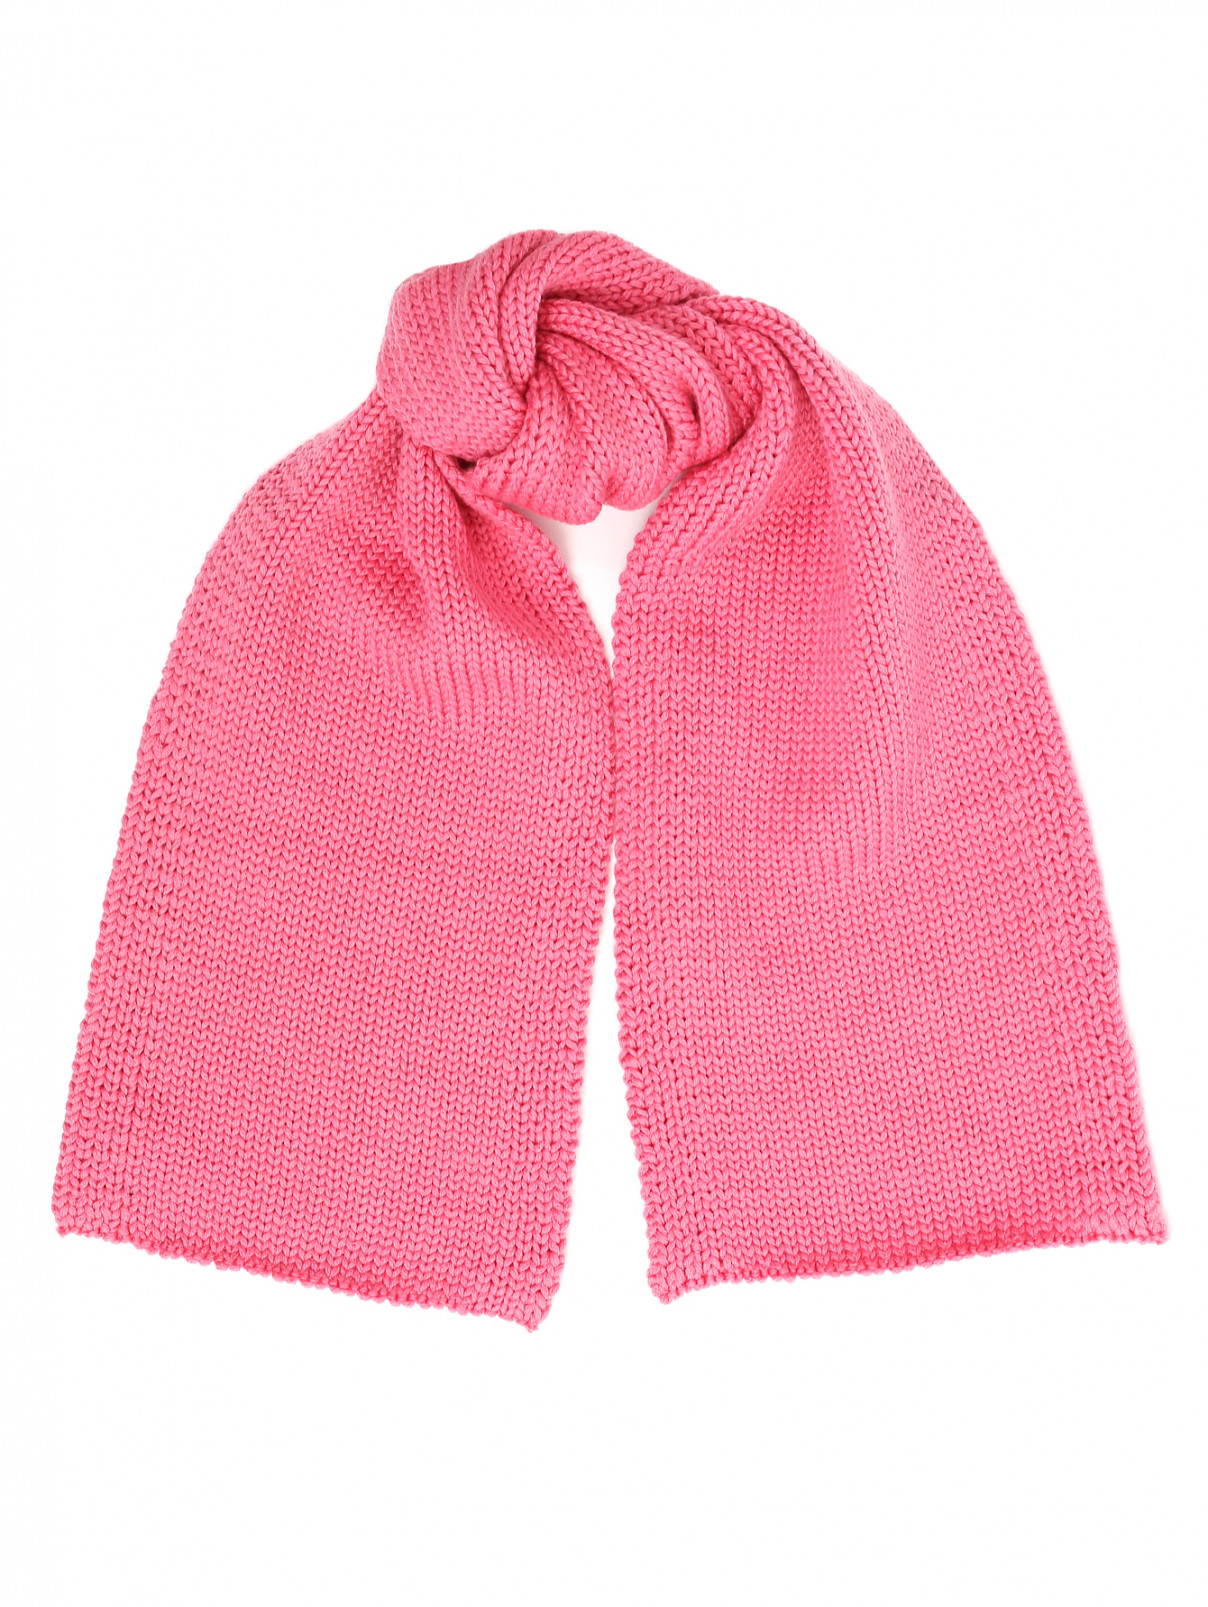 Шарф из шерсти крупной вязки Catya  –  Общий вид  – Цвет:  Розовый